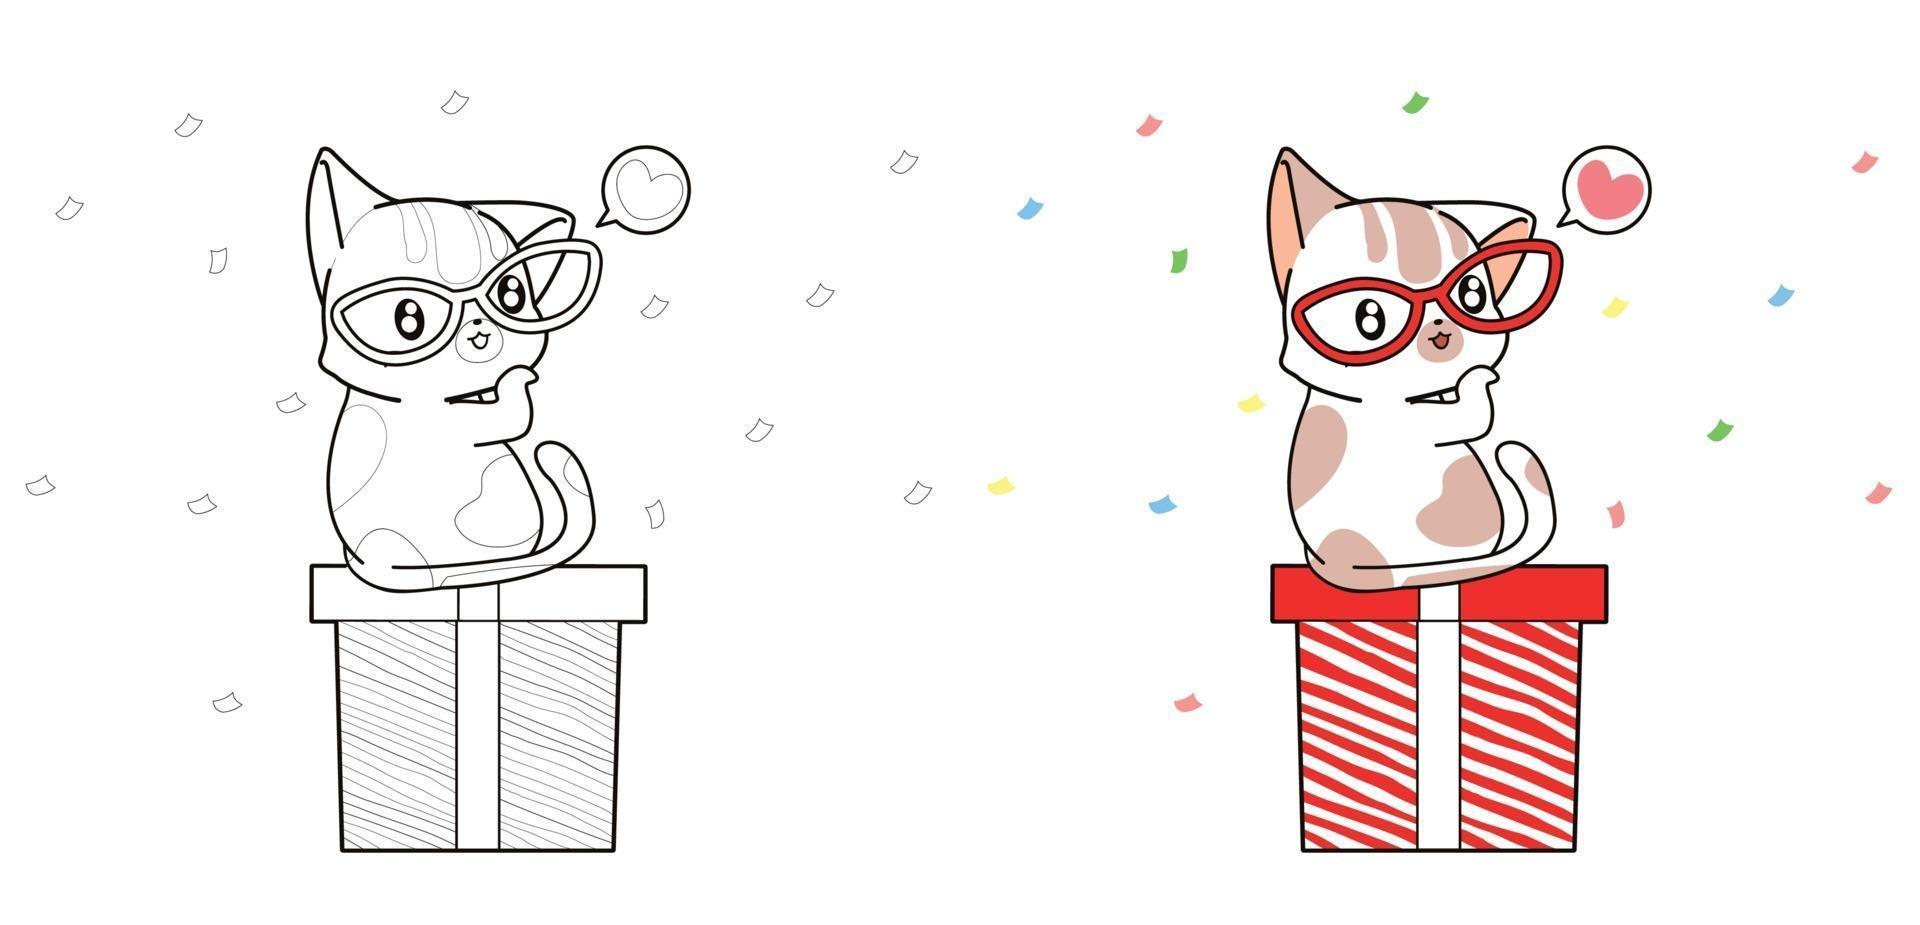 Lindo gato y caja de regalo página para colorear de dibujos animados vector